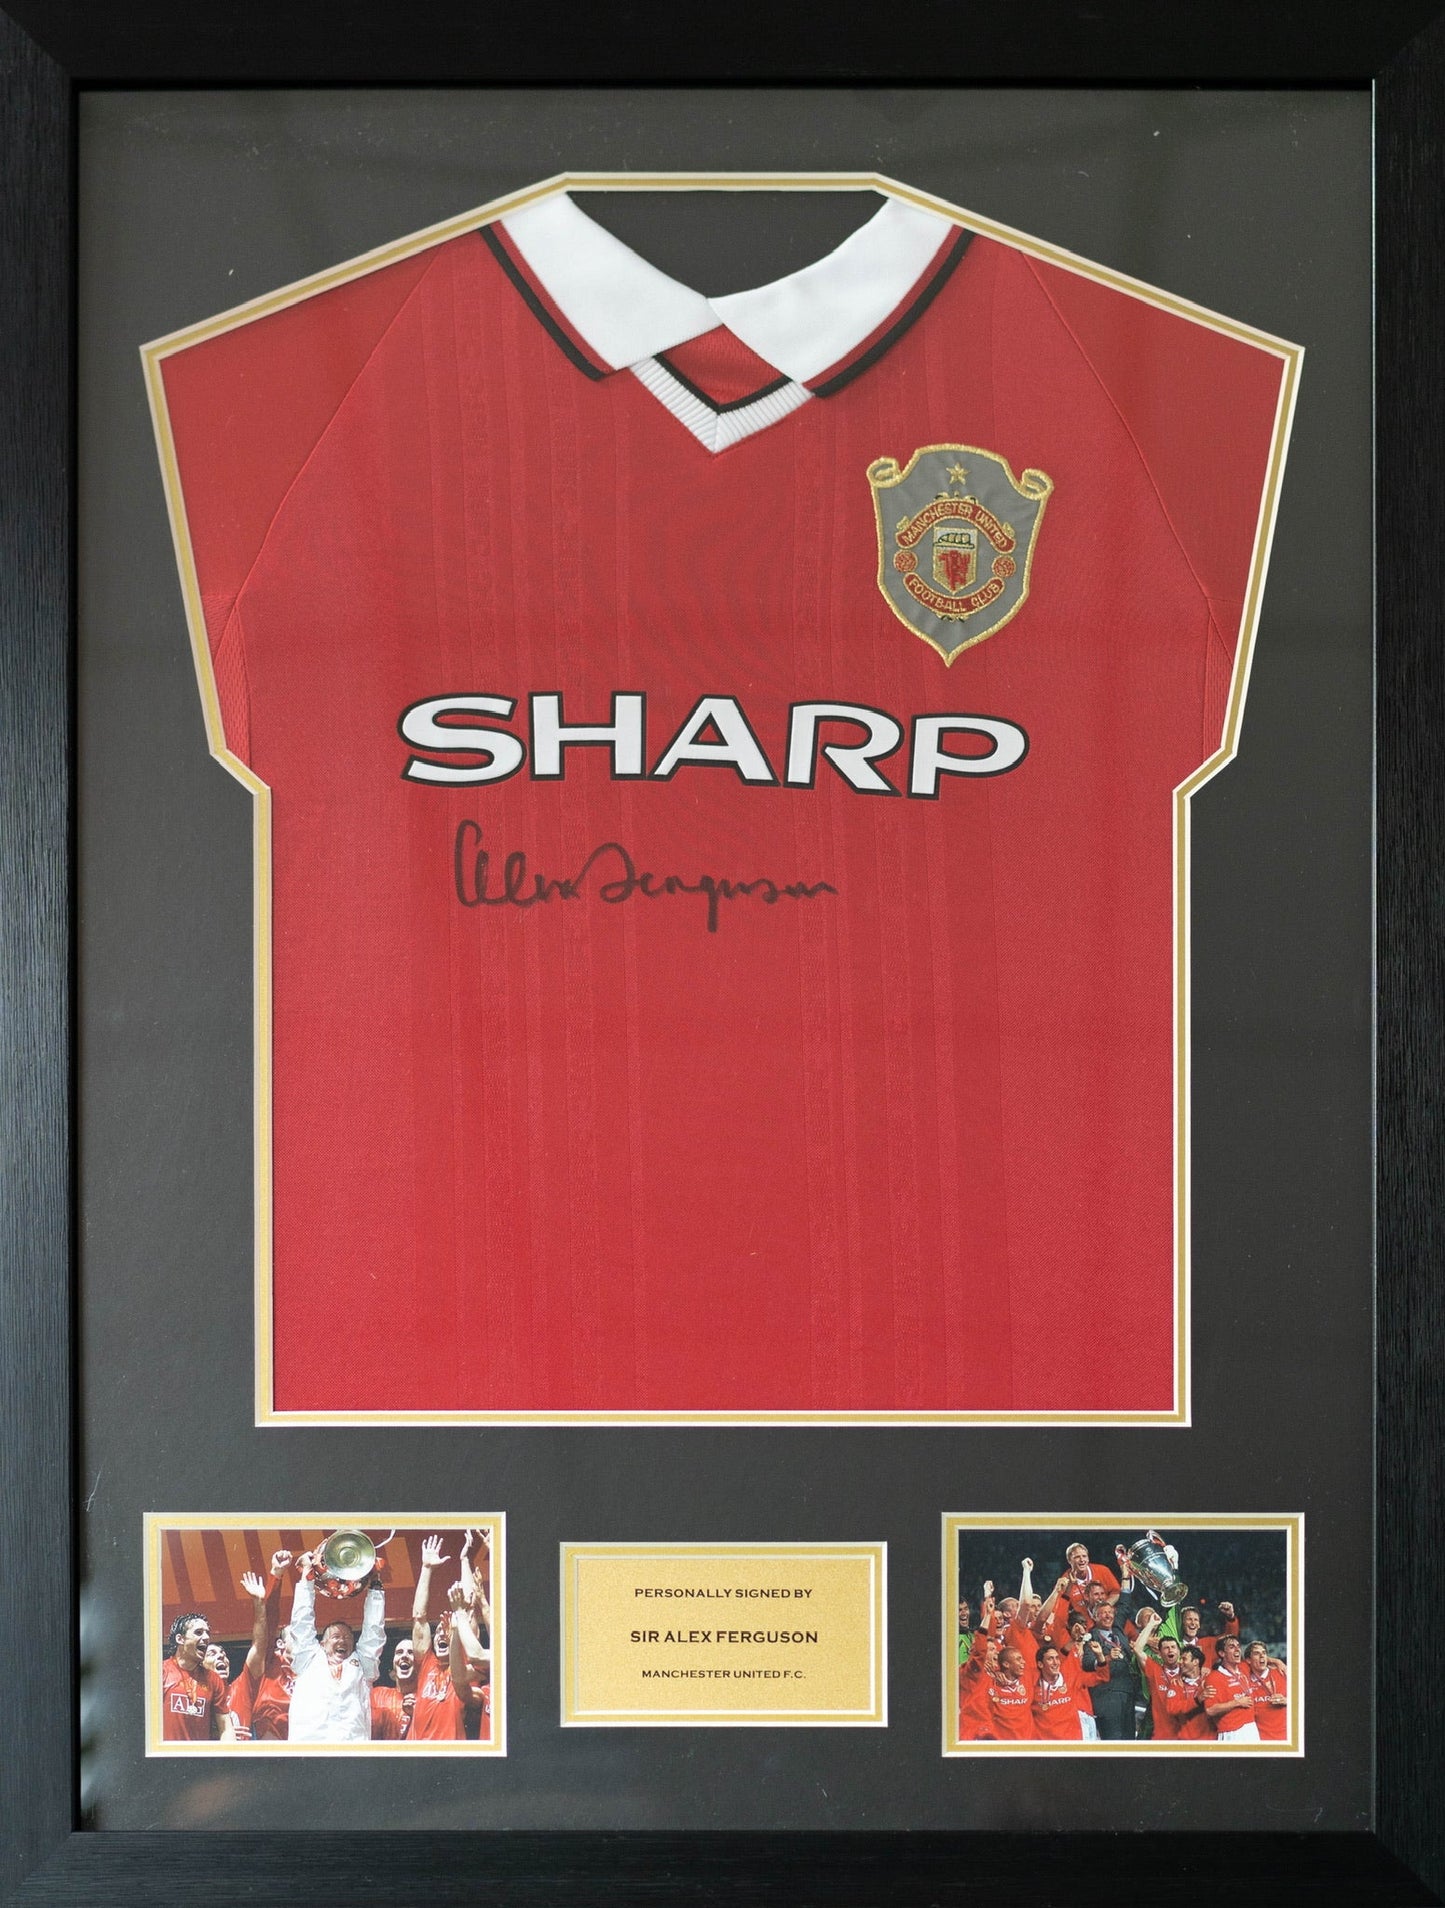 費格遜 Sir Alex Ferguson 曼聯1999歐冠球衣 (前簽)